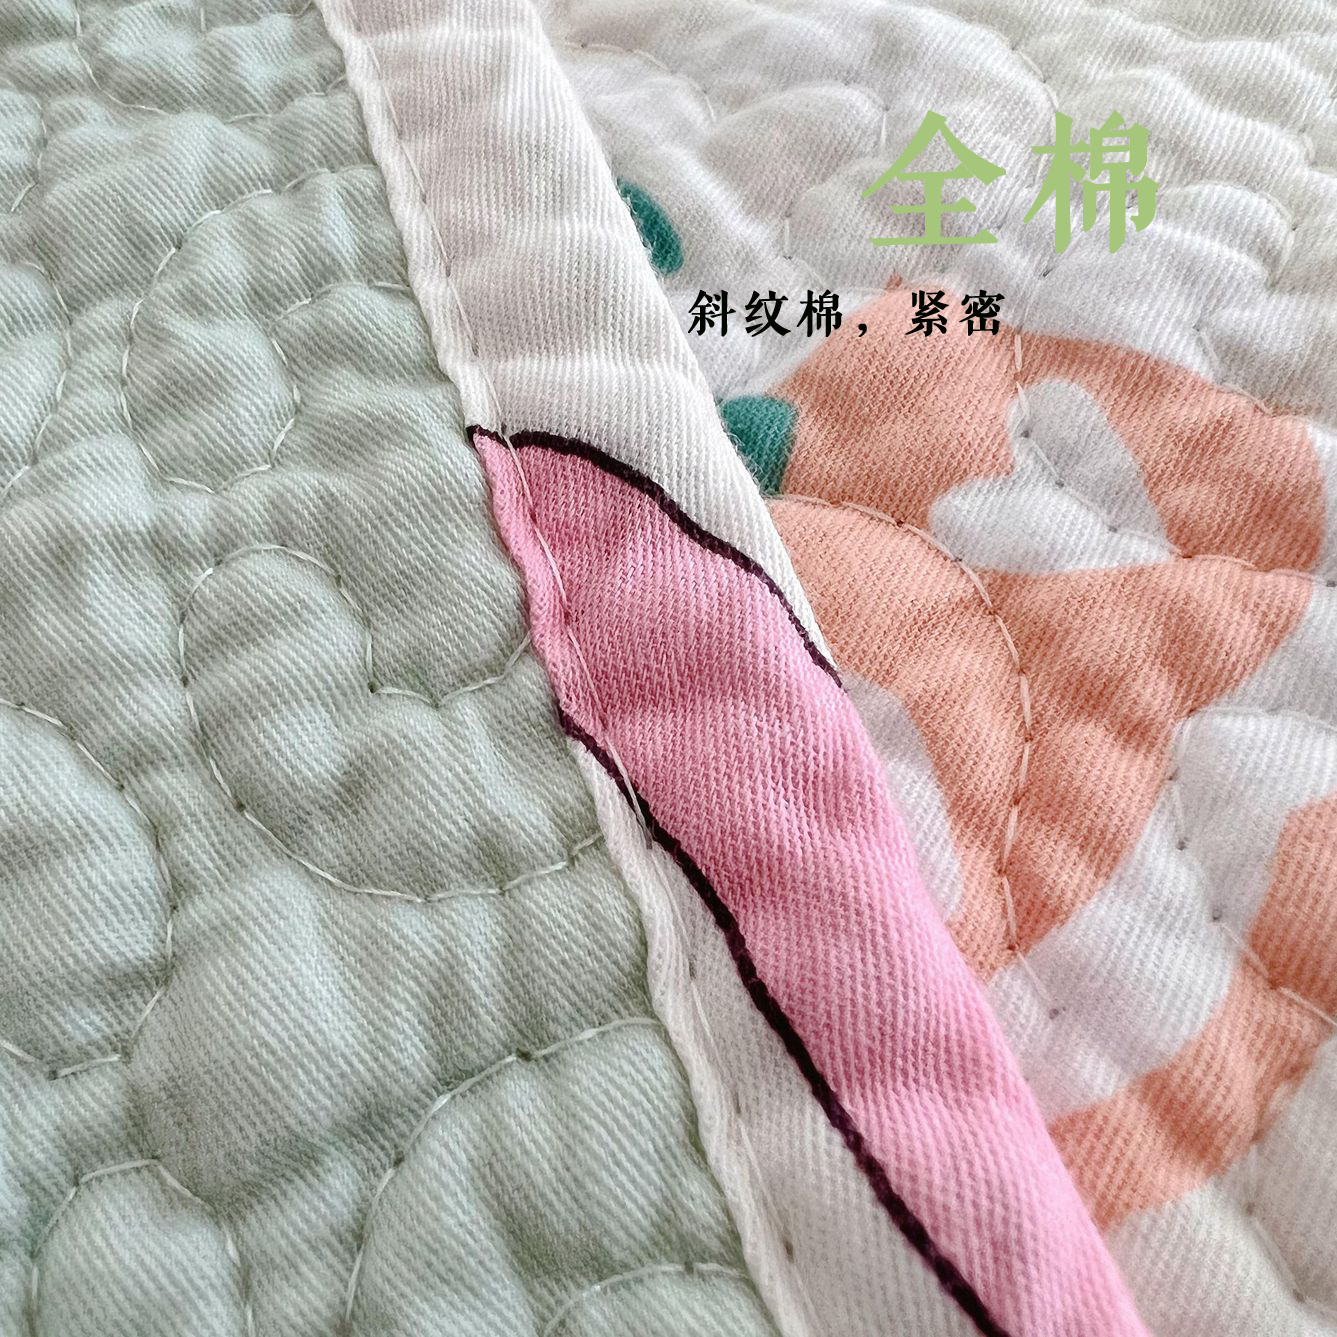 纯棉床盖单件韩国斜纹全棉绗缝被双面夹棉防滑卡通床单榻榻米床垫